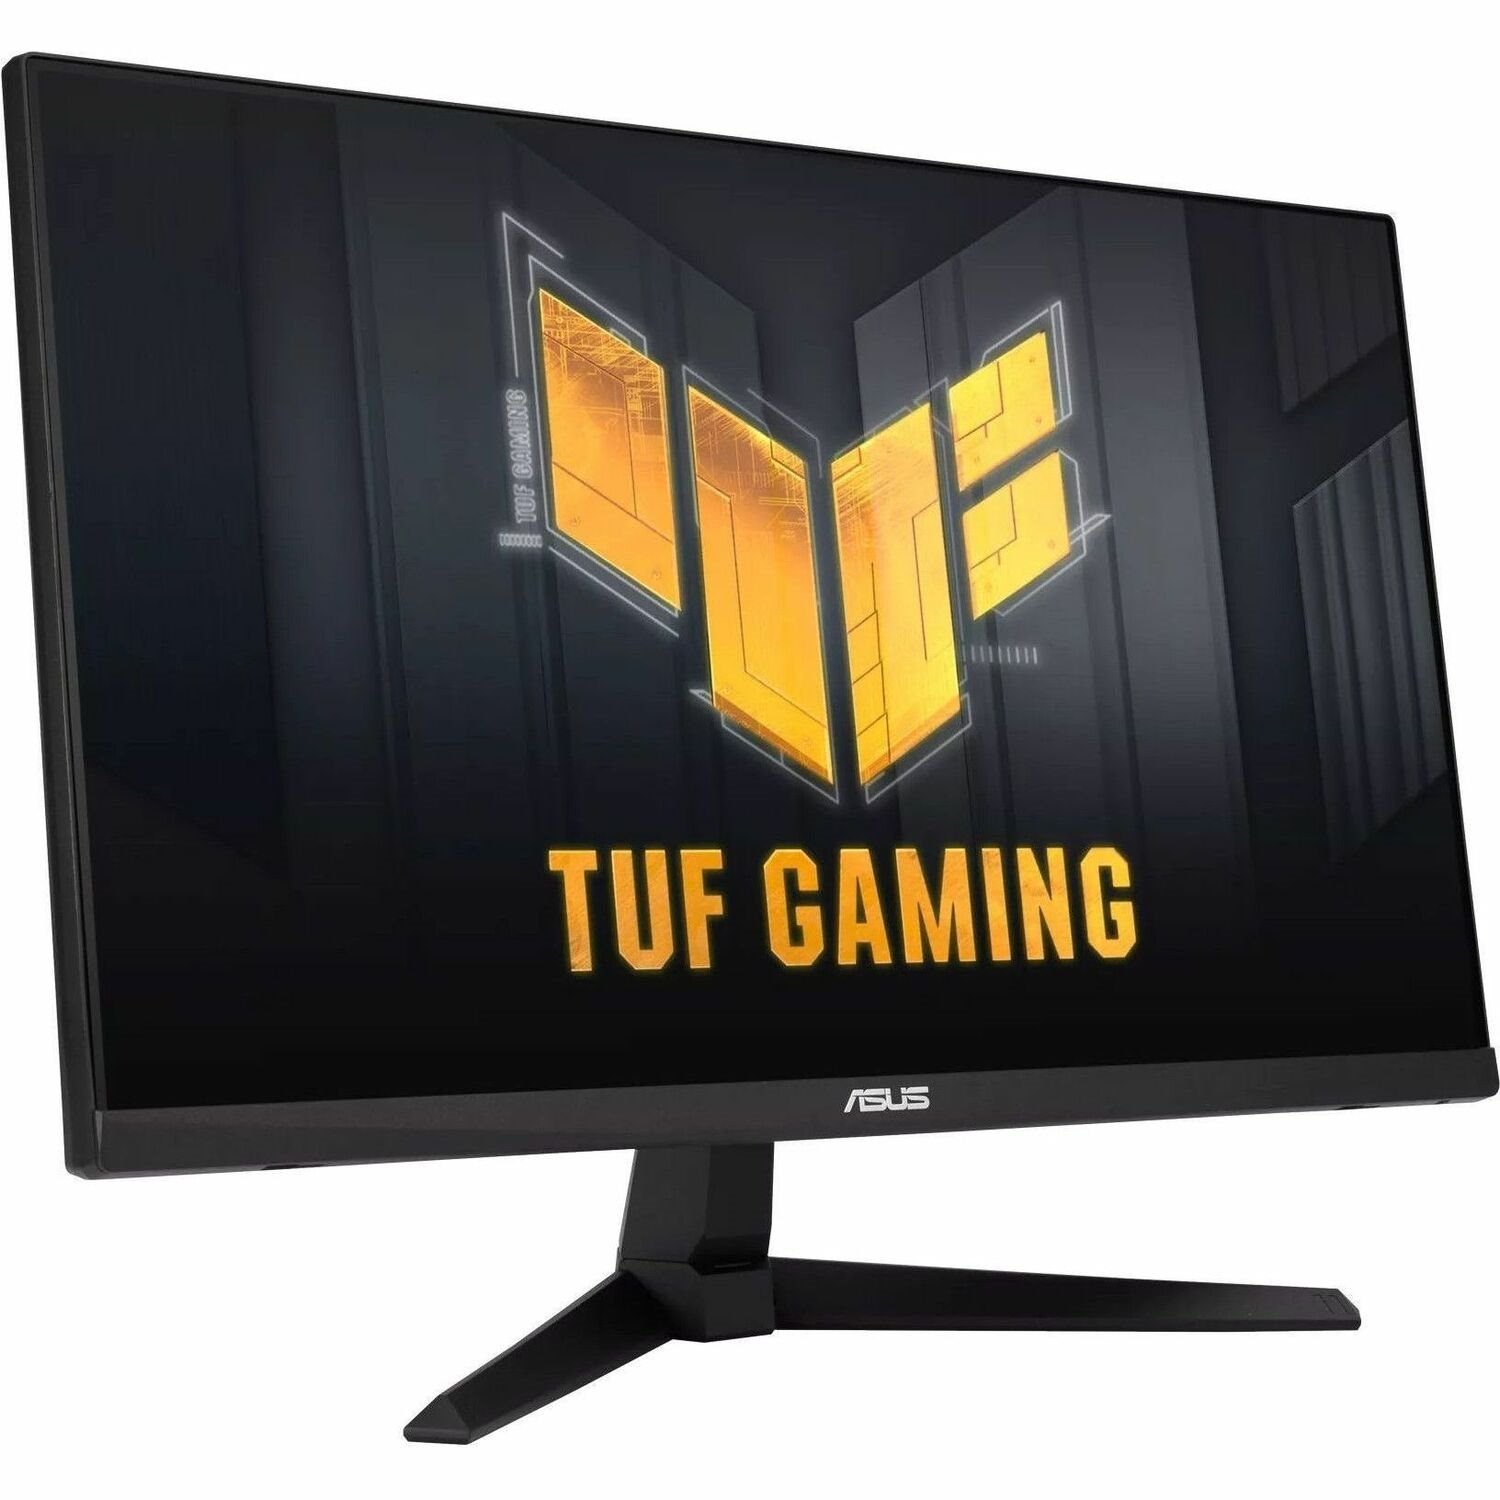 TUF VG249Q3A 24" Class Full HD Gaming LED Monitor - 16:9 - Black